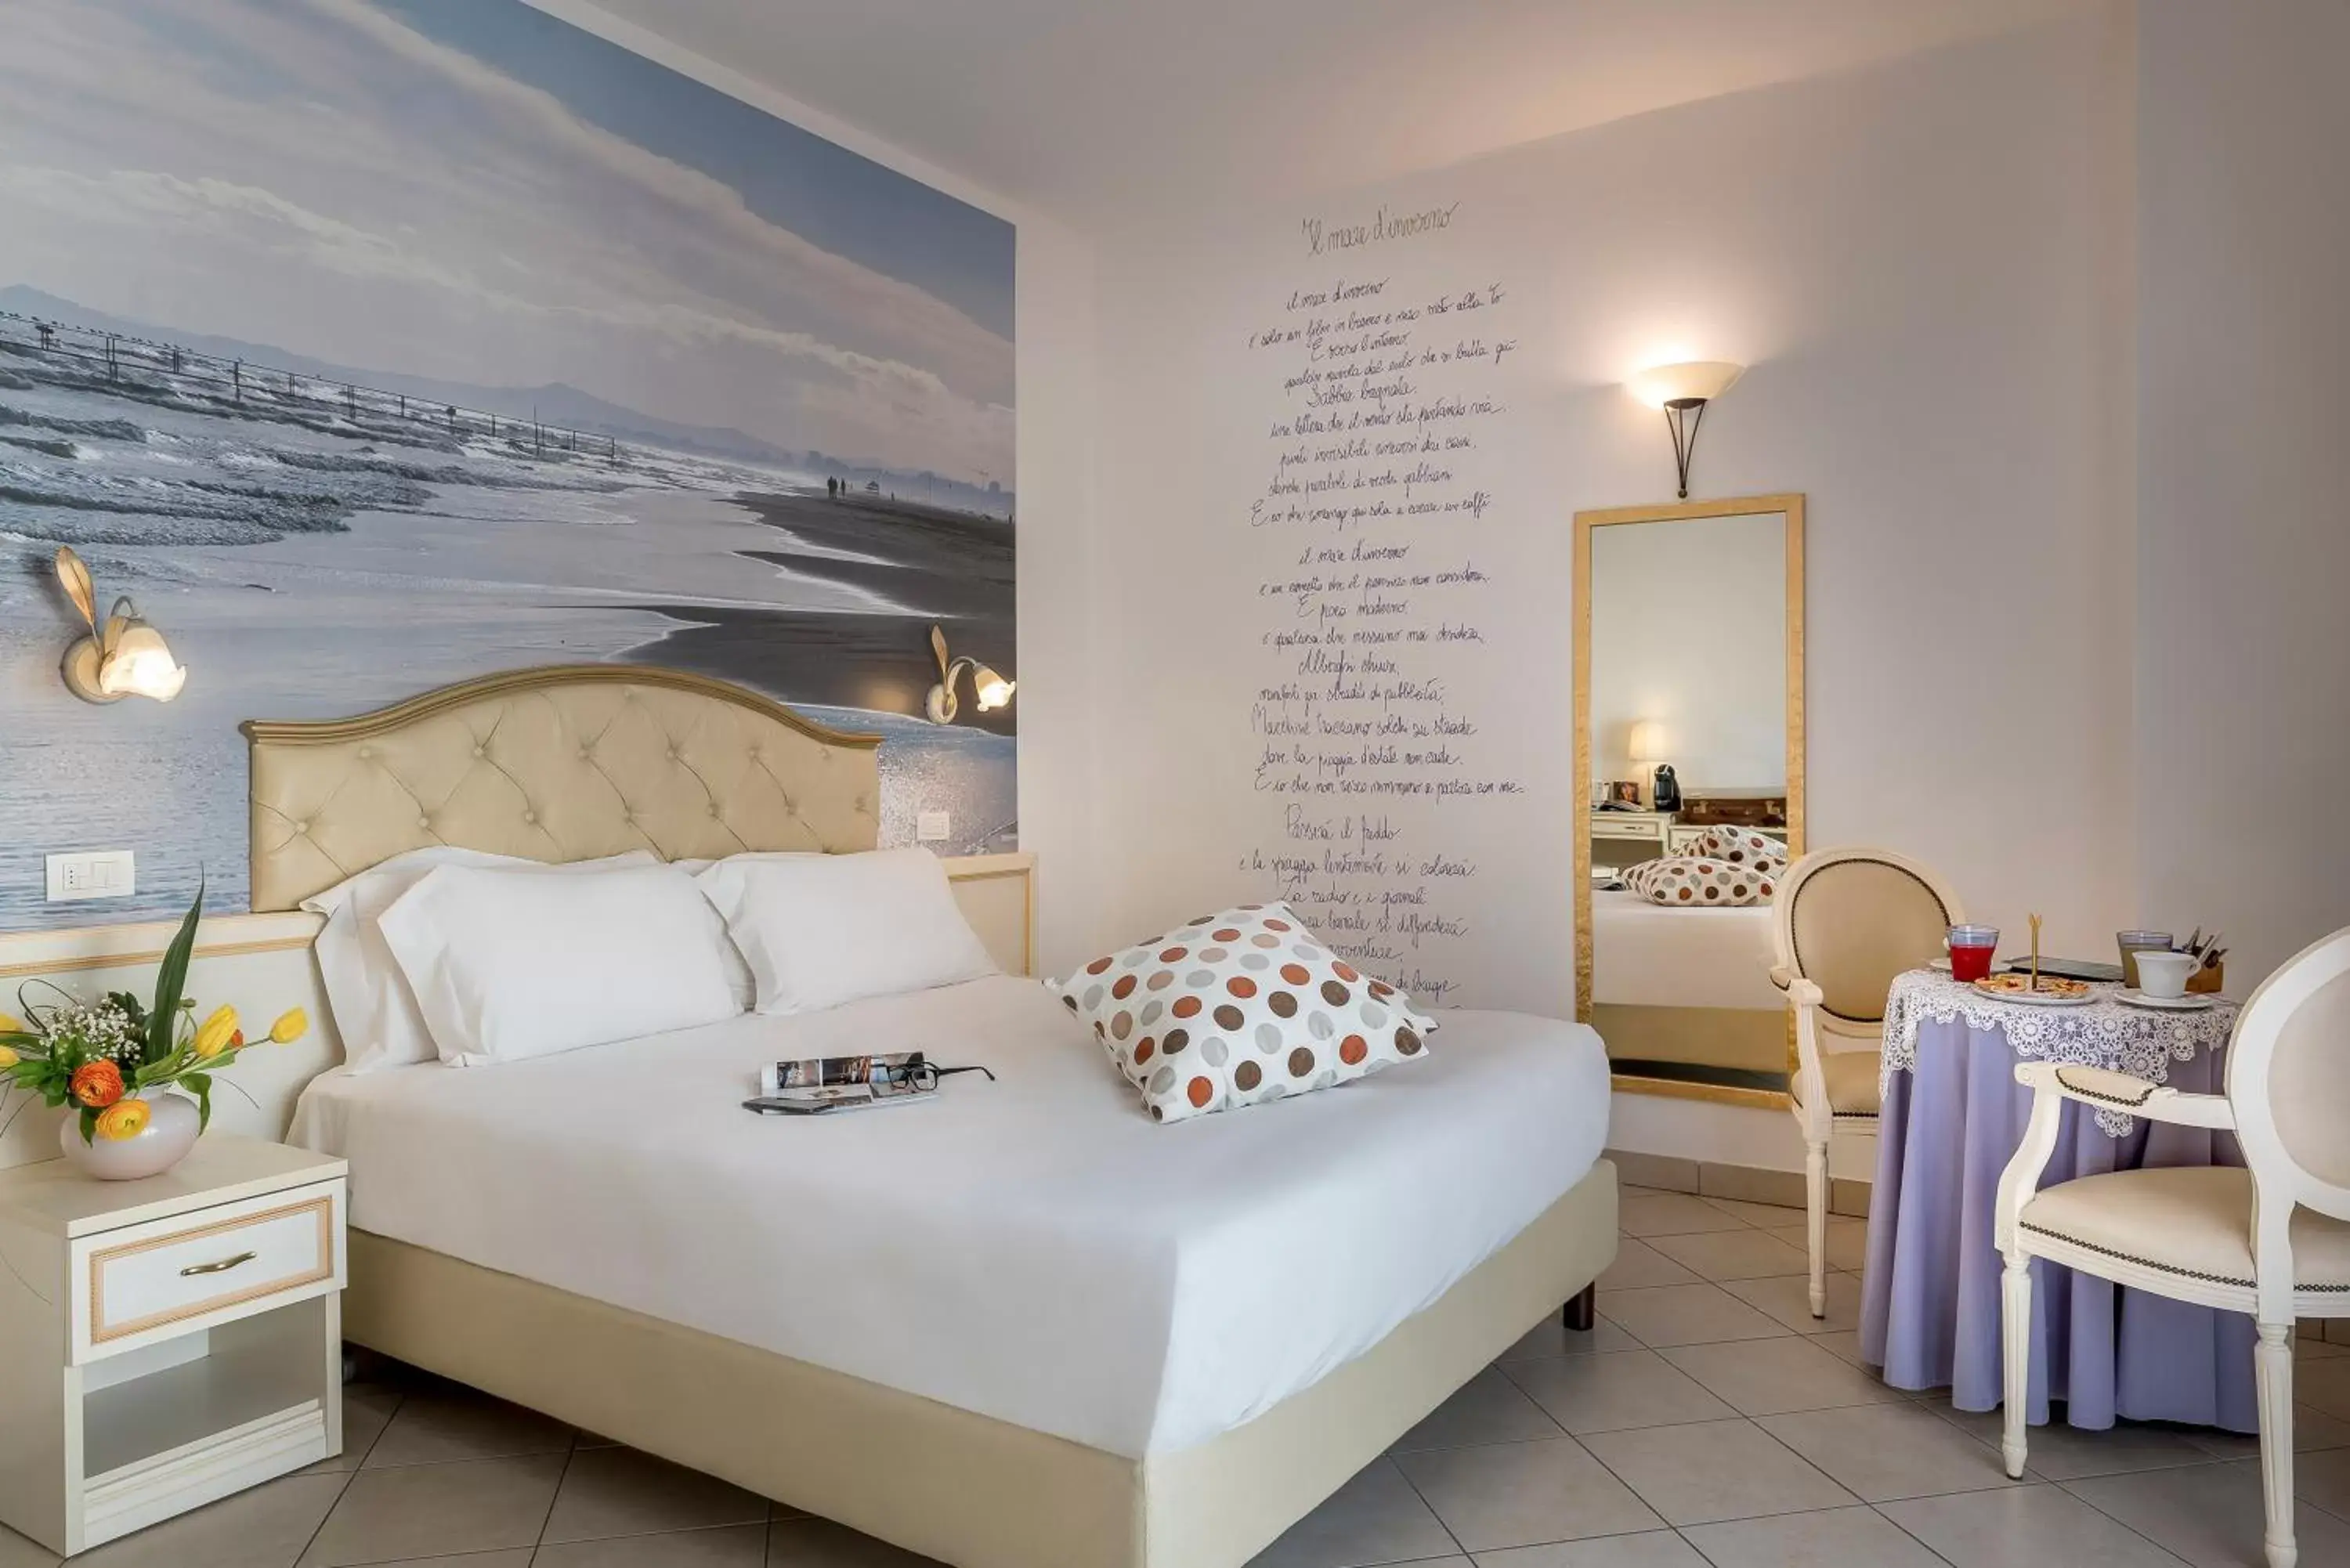 Bed in Sovrana Hotel & SPA